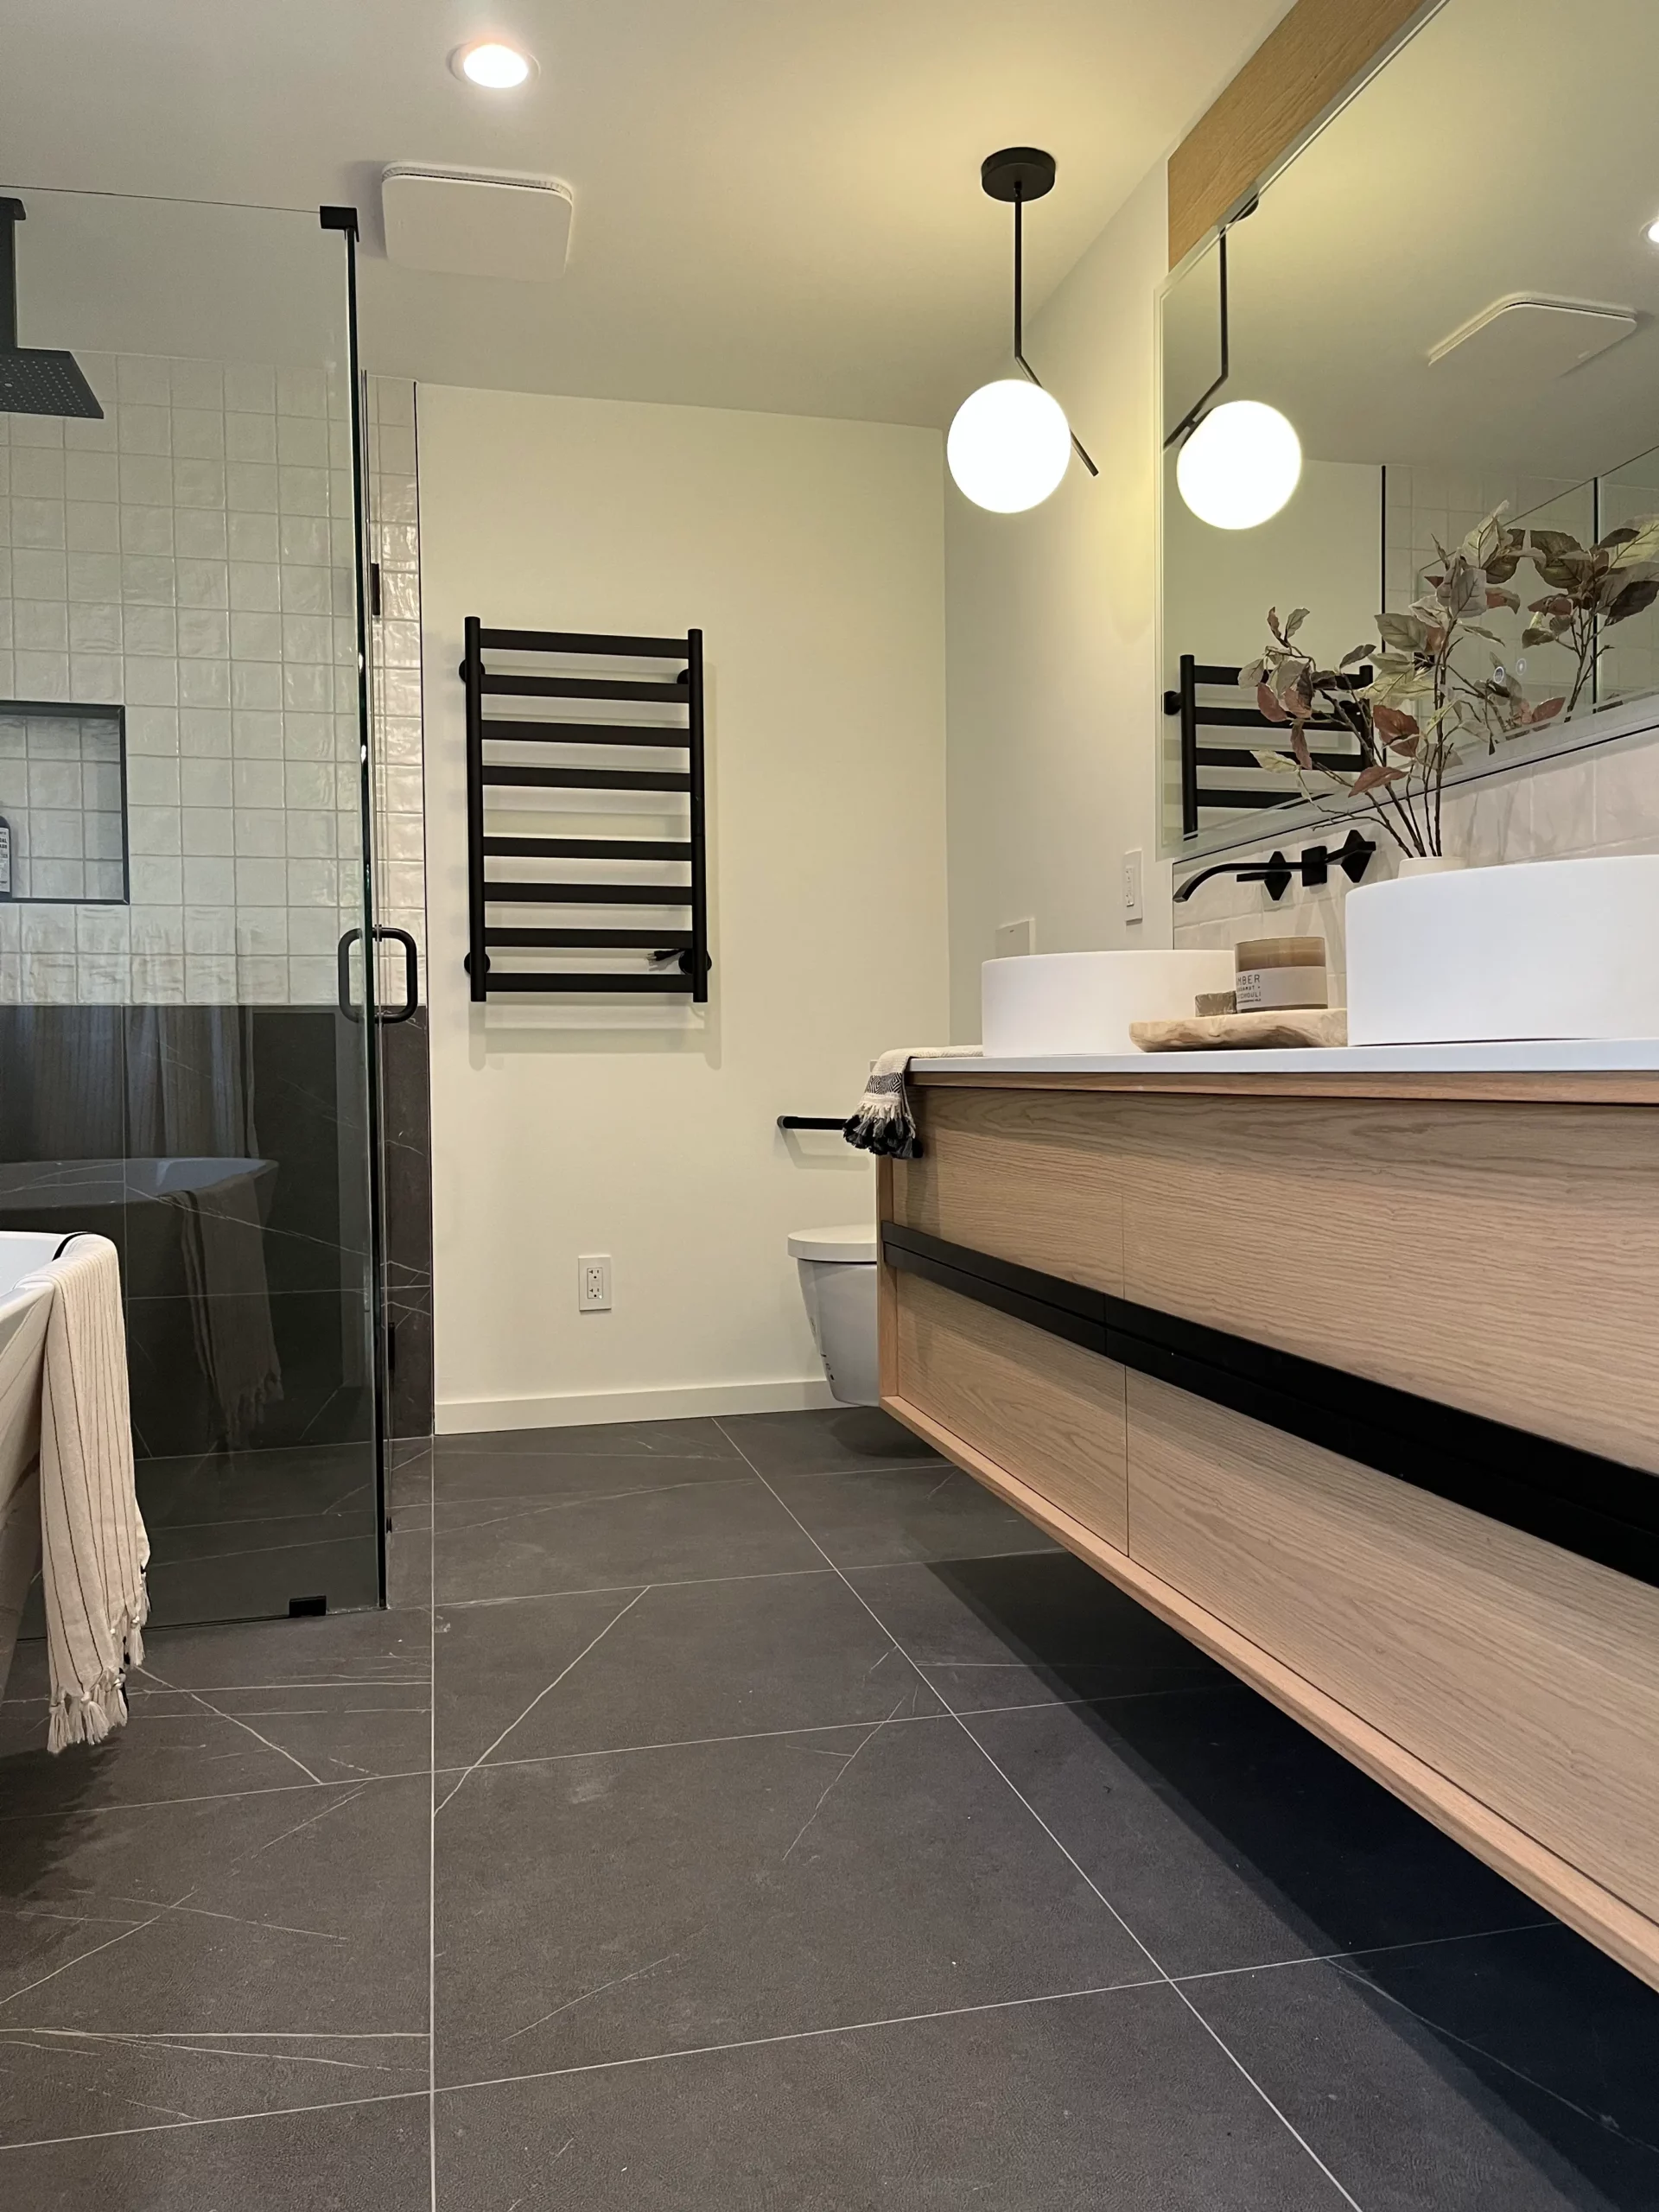 A modern bathroom with a bathtub and sink.